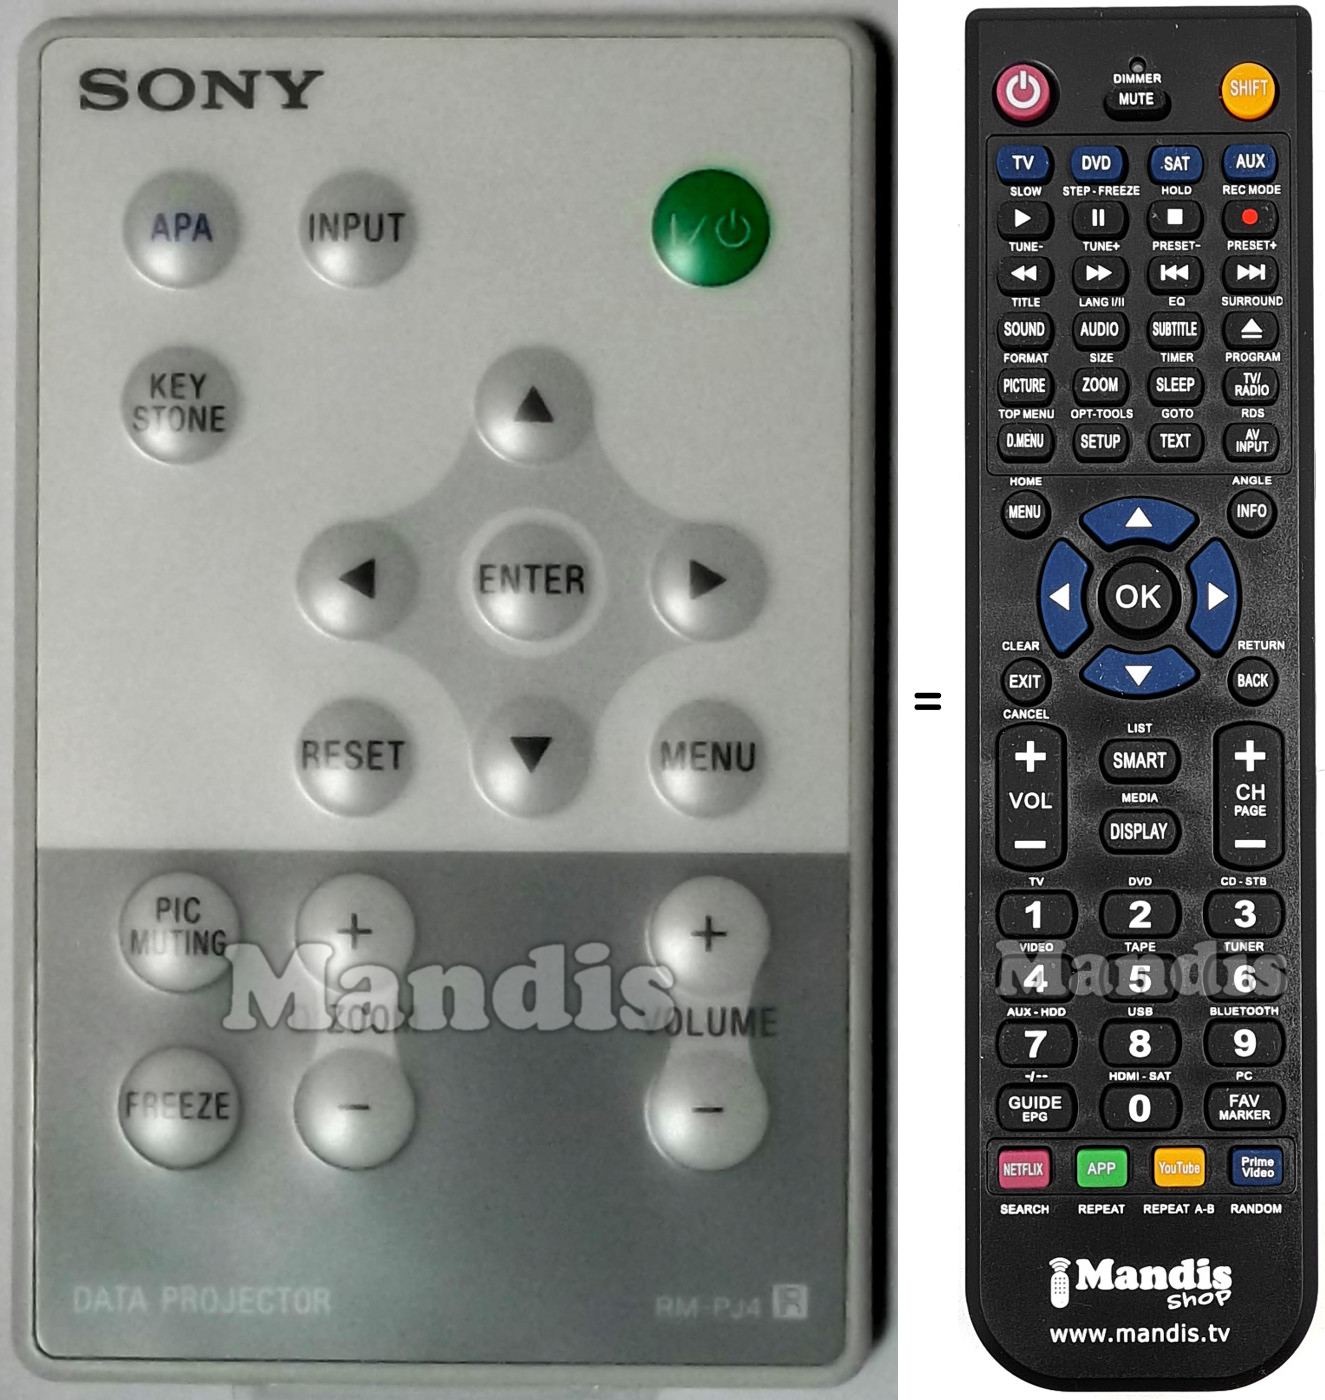 Telecomando equivalente Sony RM-PJ4